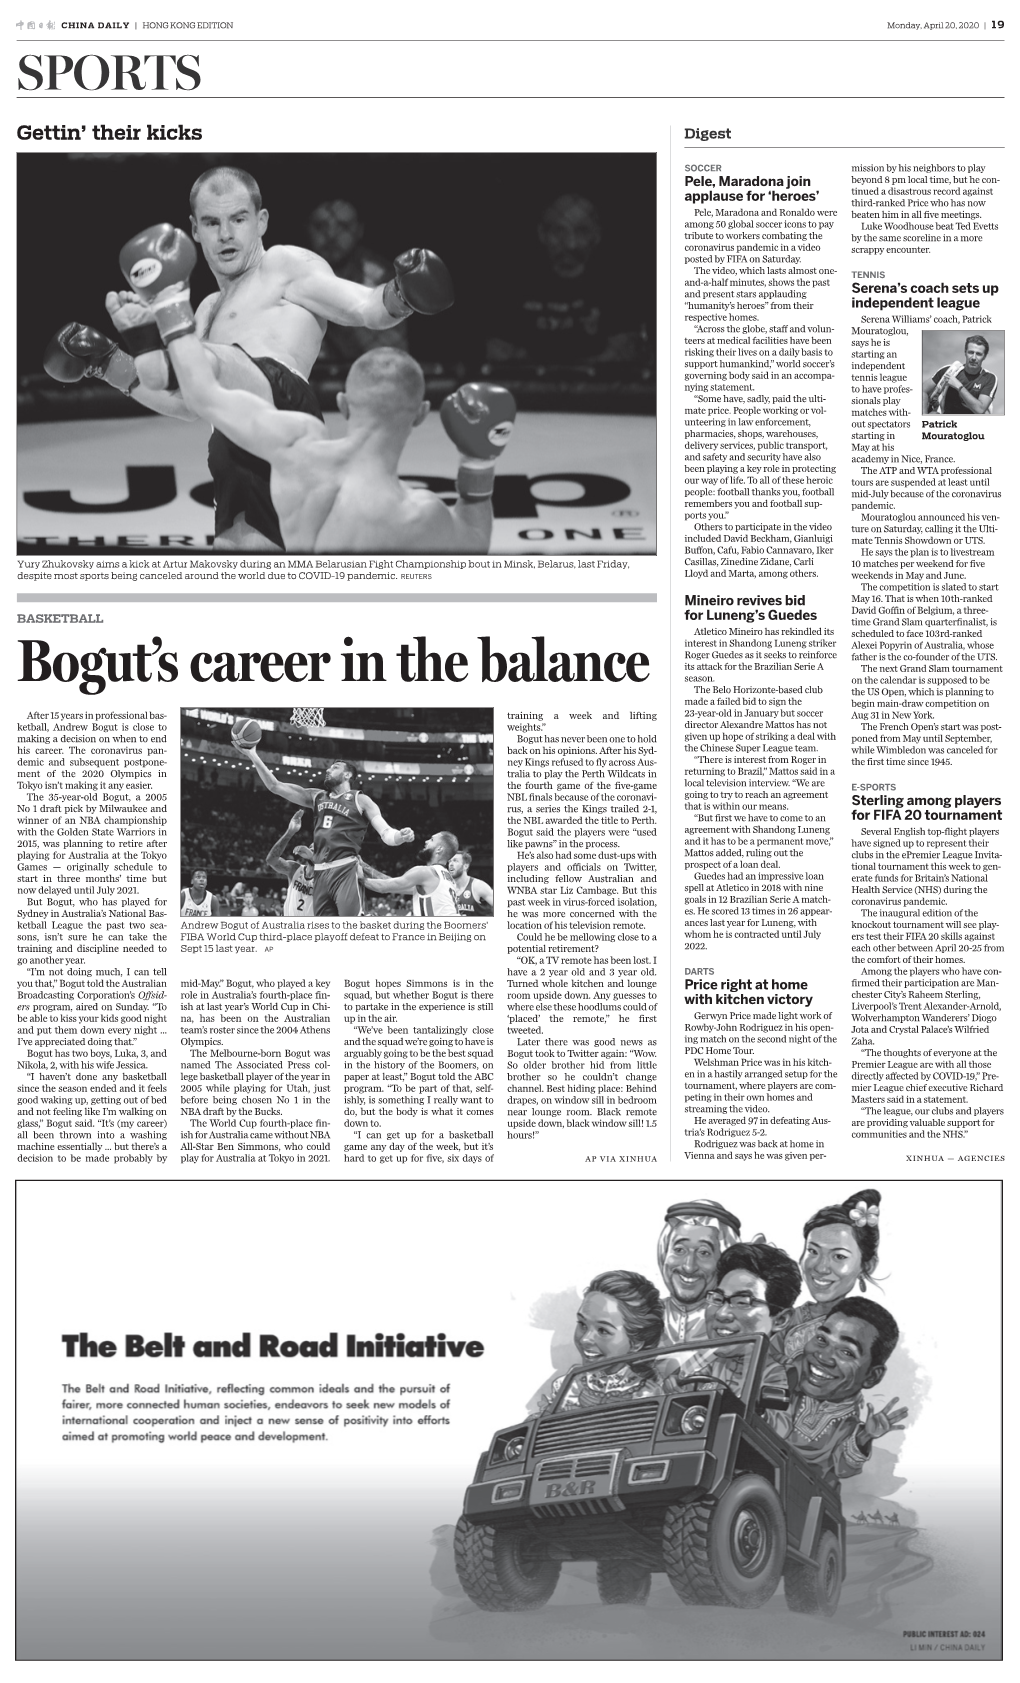 Bogut's Career in the Balance